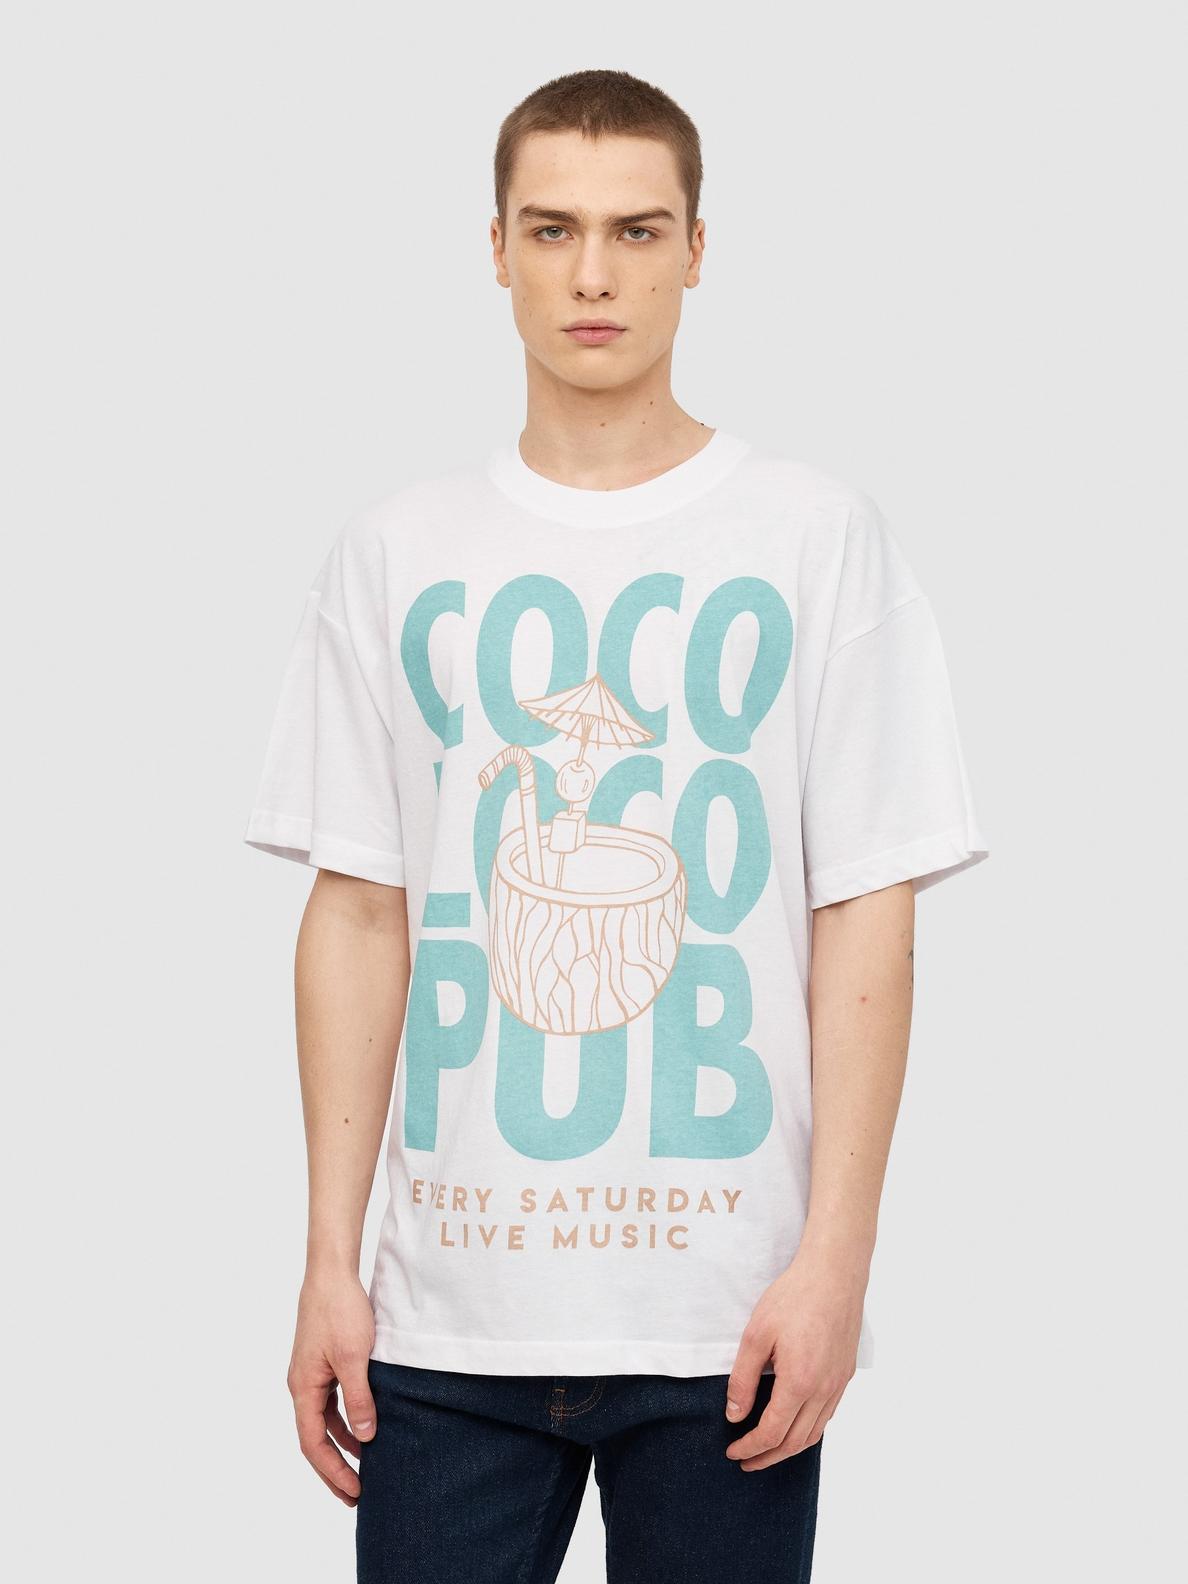 Oferta de Camiseta Coco Loco por 5,99€ en Inside